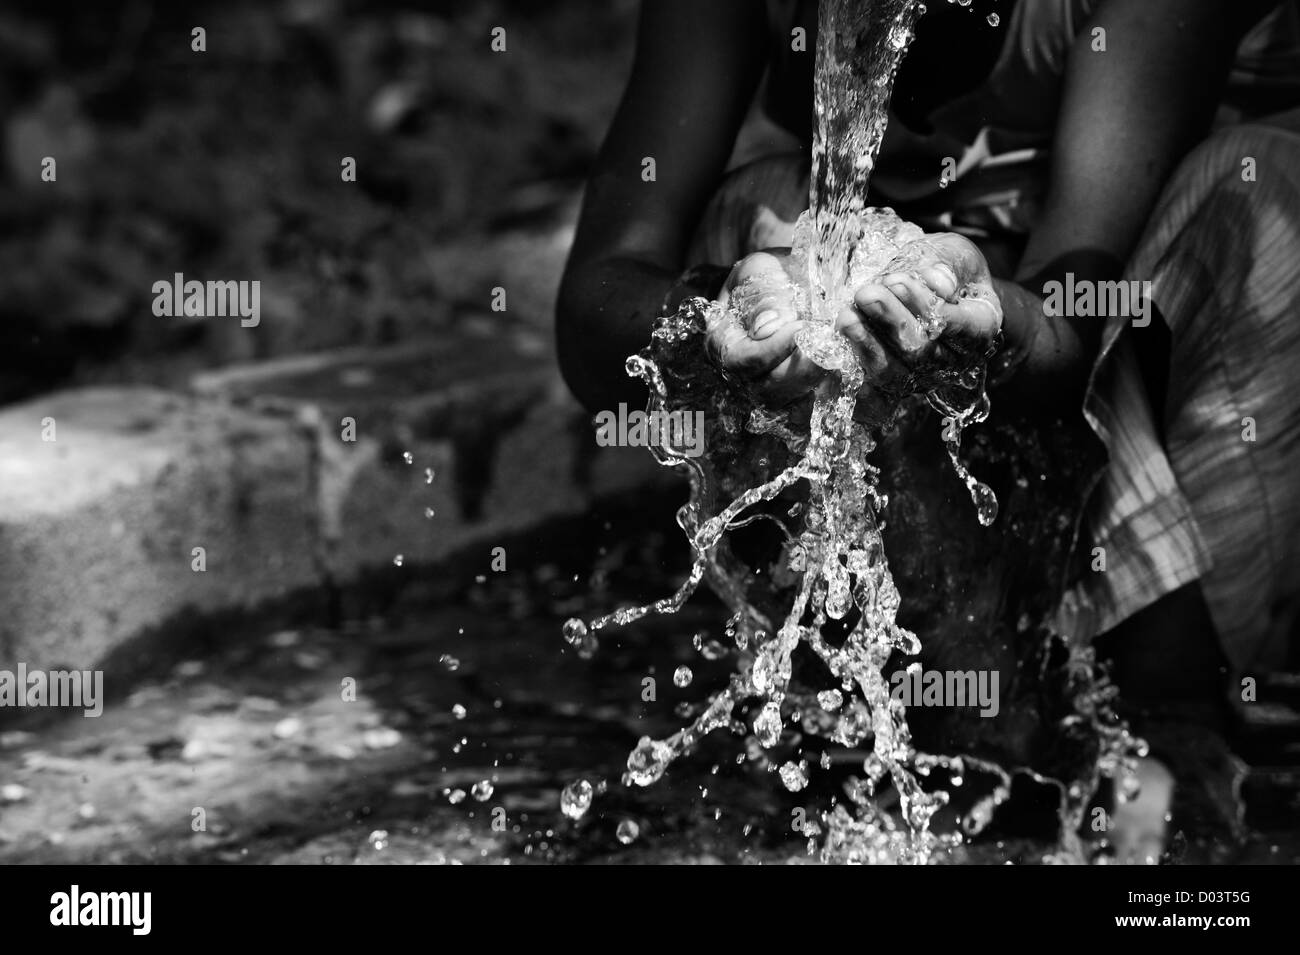 L'eau d'une pompe manuelle dans un village de l'Inde rurale et verser dans un indien pour les mains. L'Andhra Pradesh, Inde. Monochrome Banque D'Images